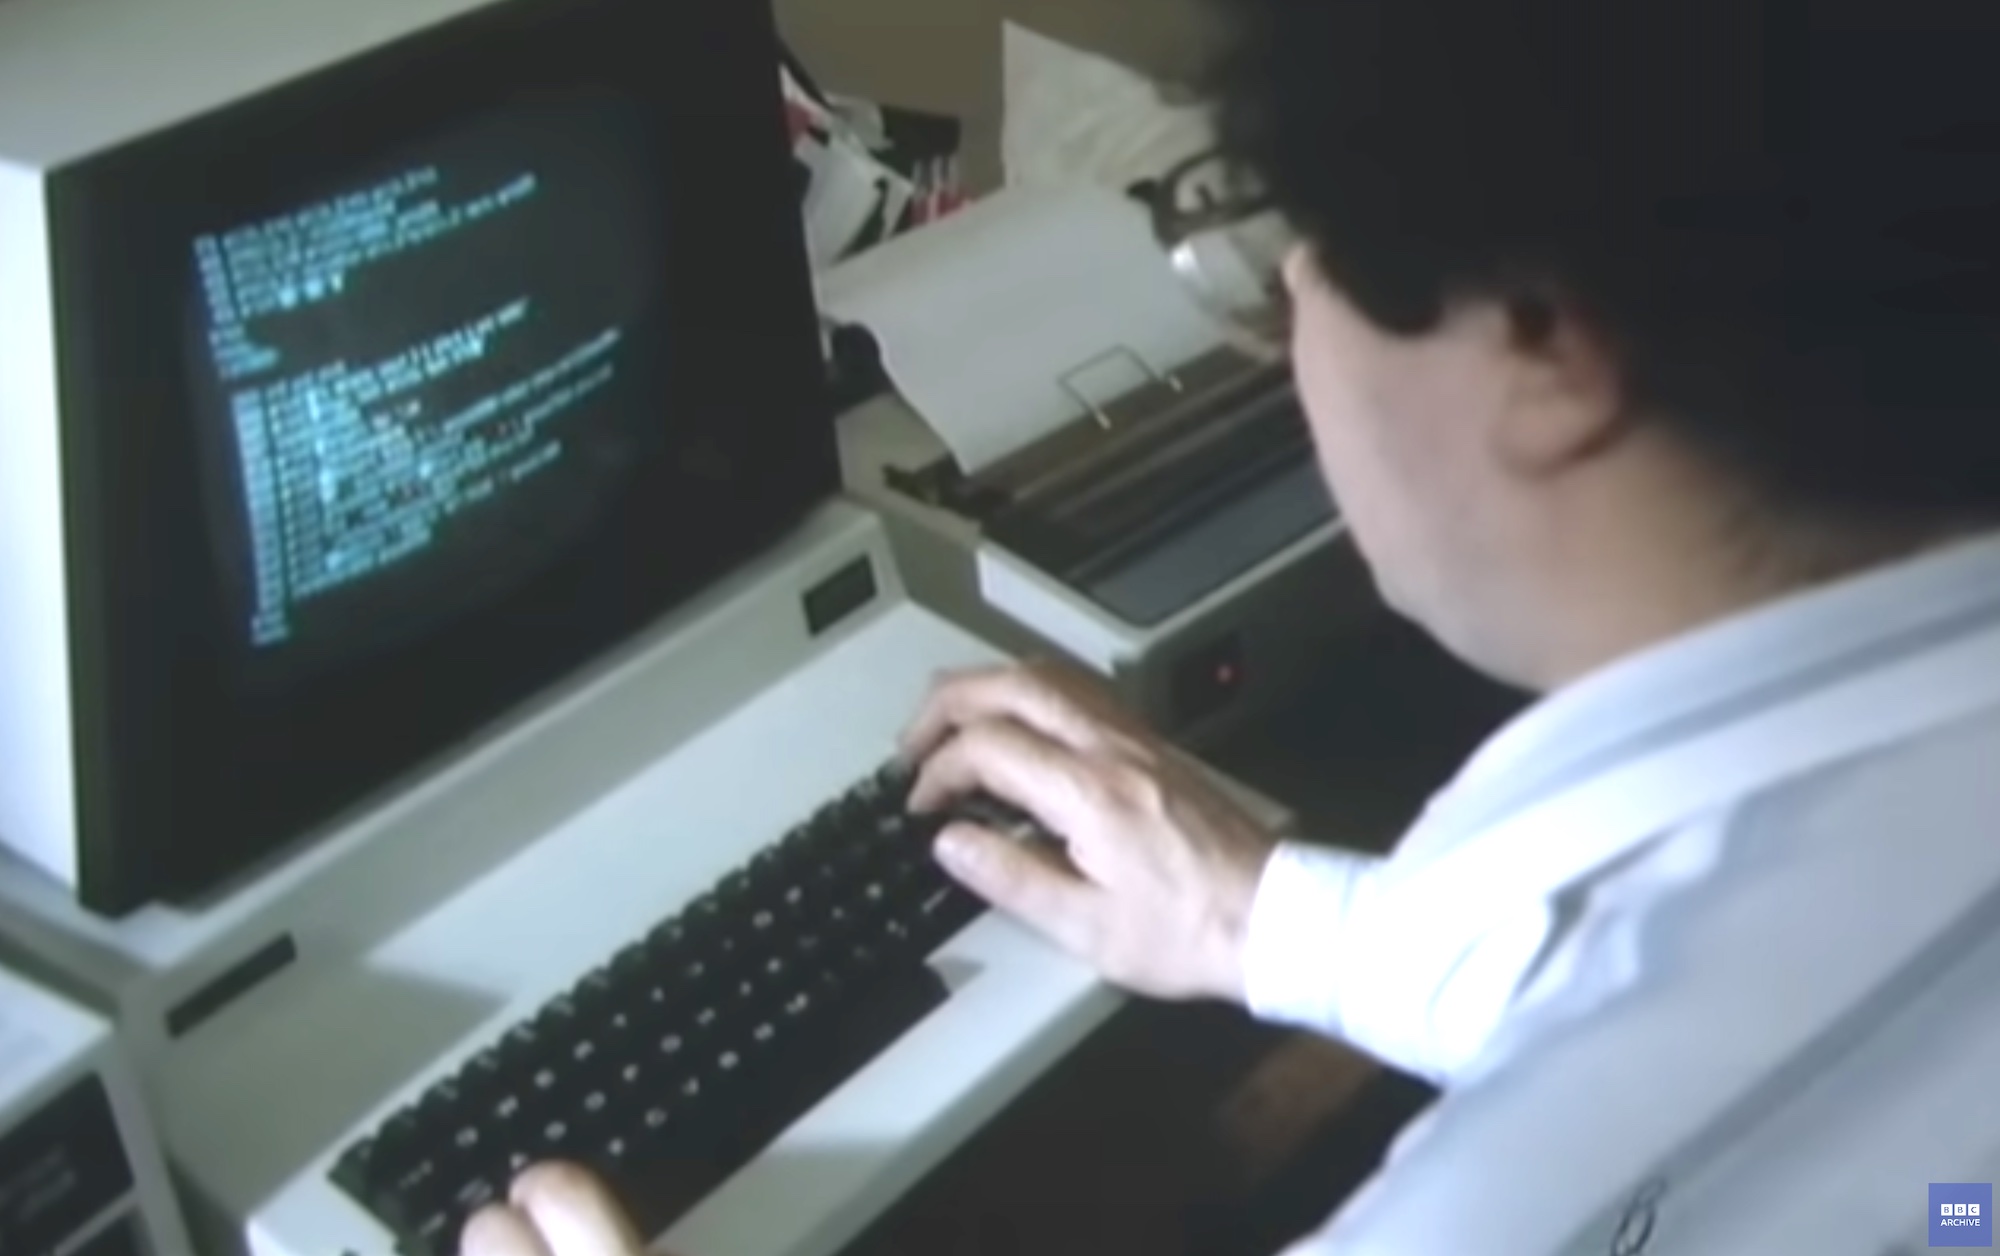 Посмотрите репортаж BBC о компьютерных наркоманах… 1983 года.